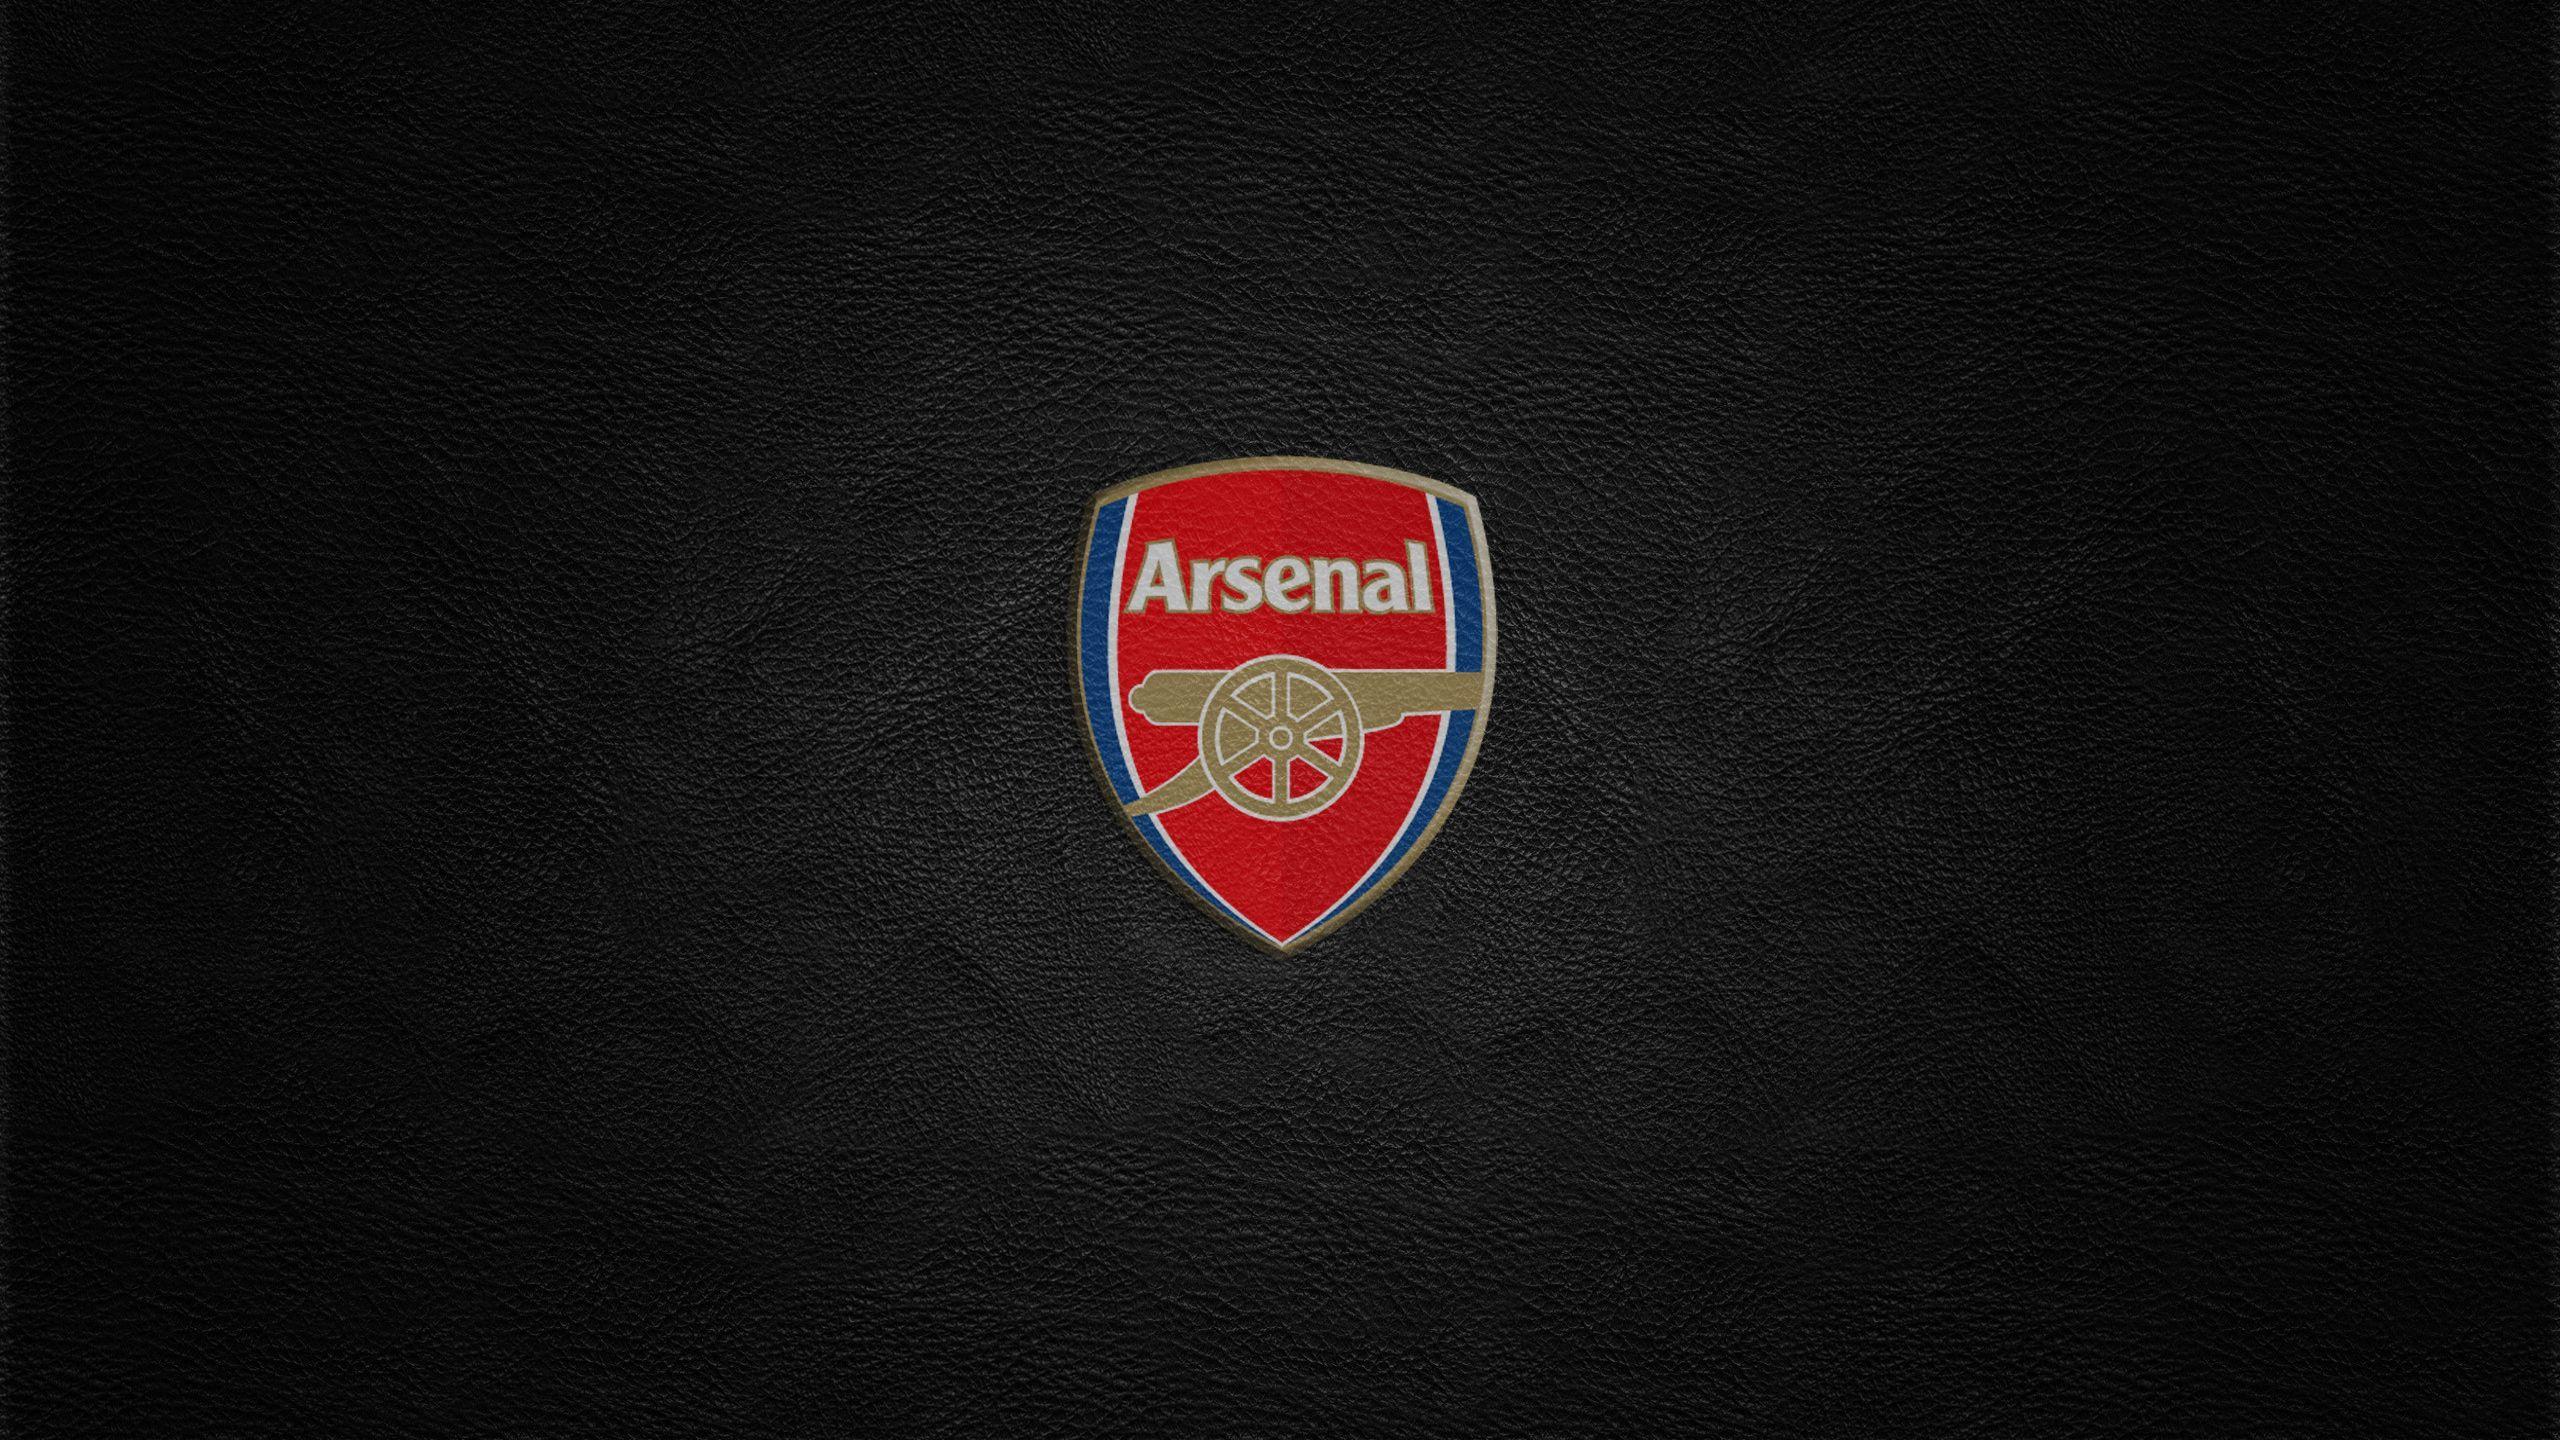 Arsenal Wallpaper HD Free DownloadD Wallpaper